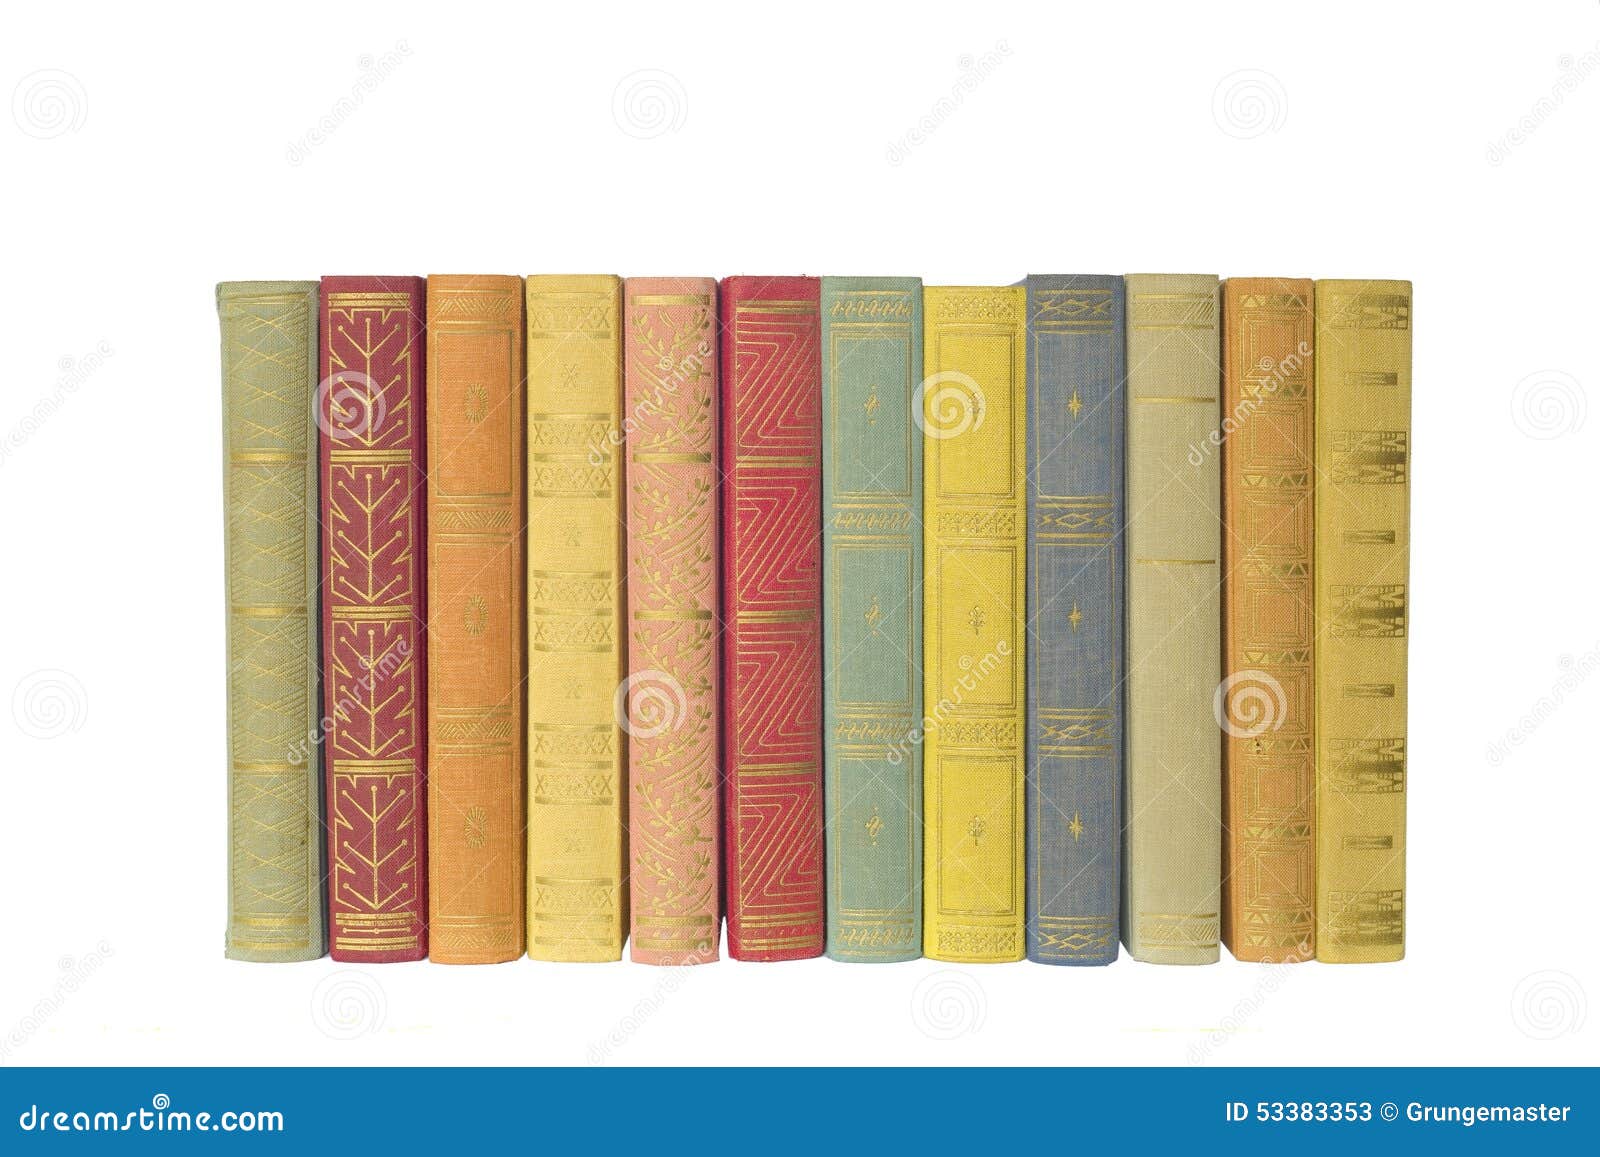 row of multicolored books,